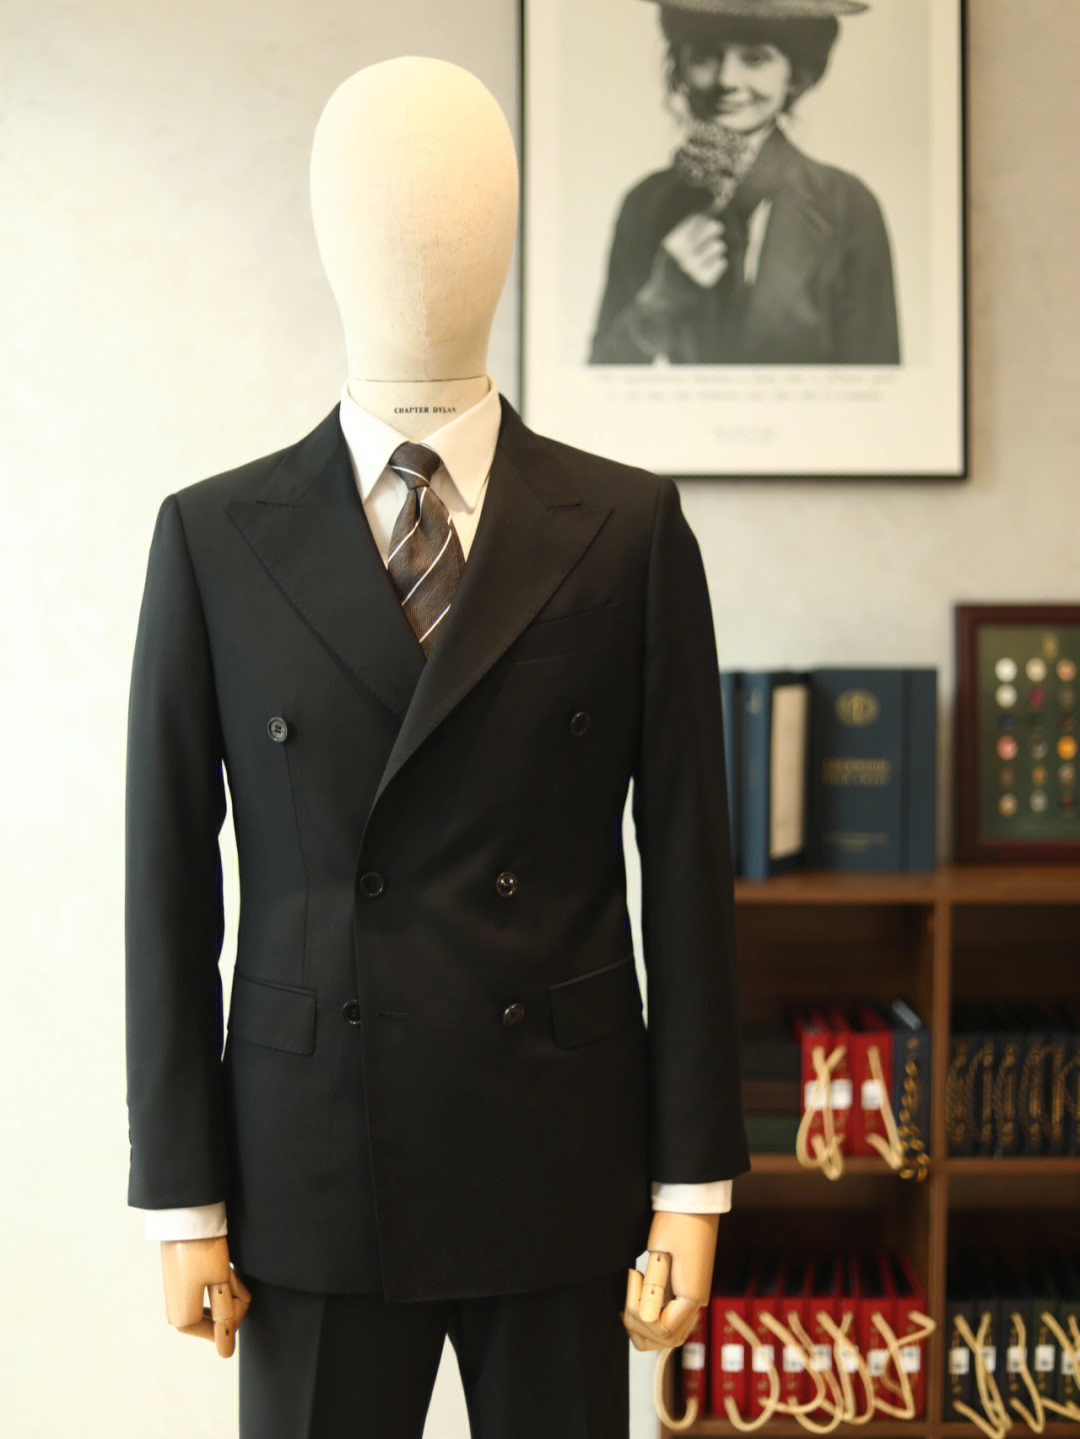 中最低级别的准礼服,一般出席婚葬礼,或者较正式的场合穿着96双排扣